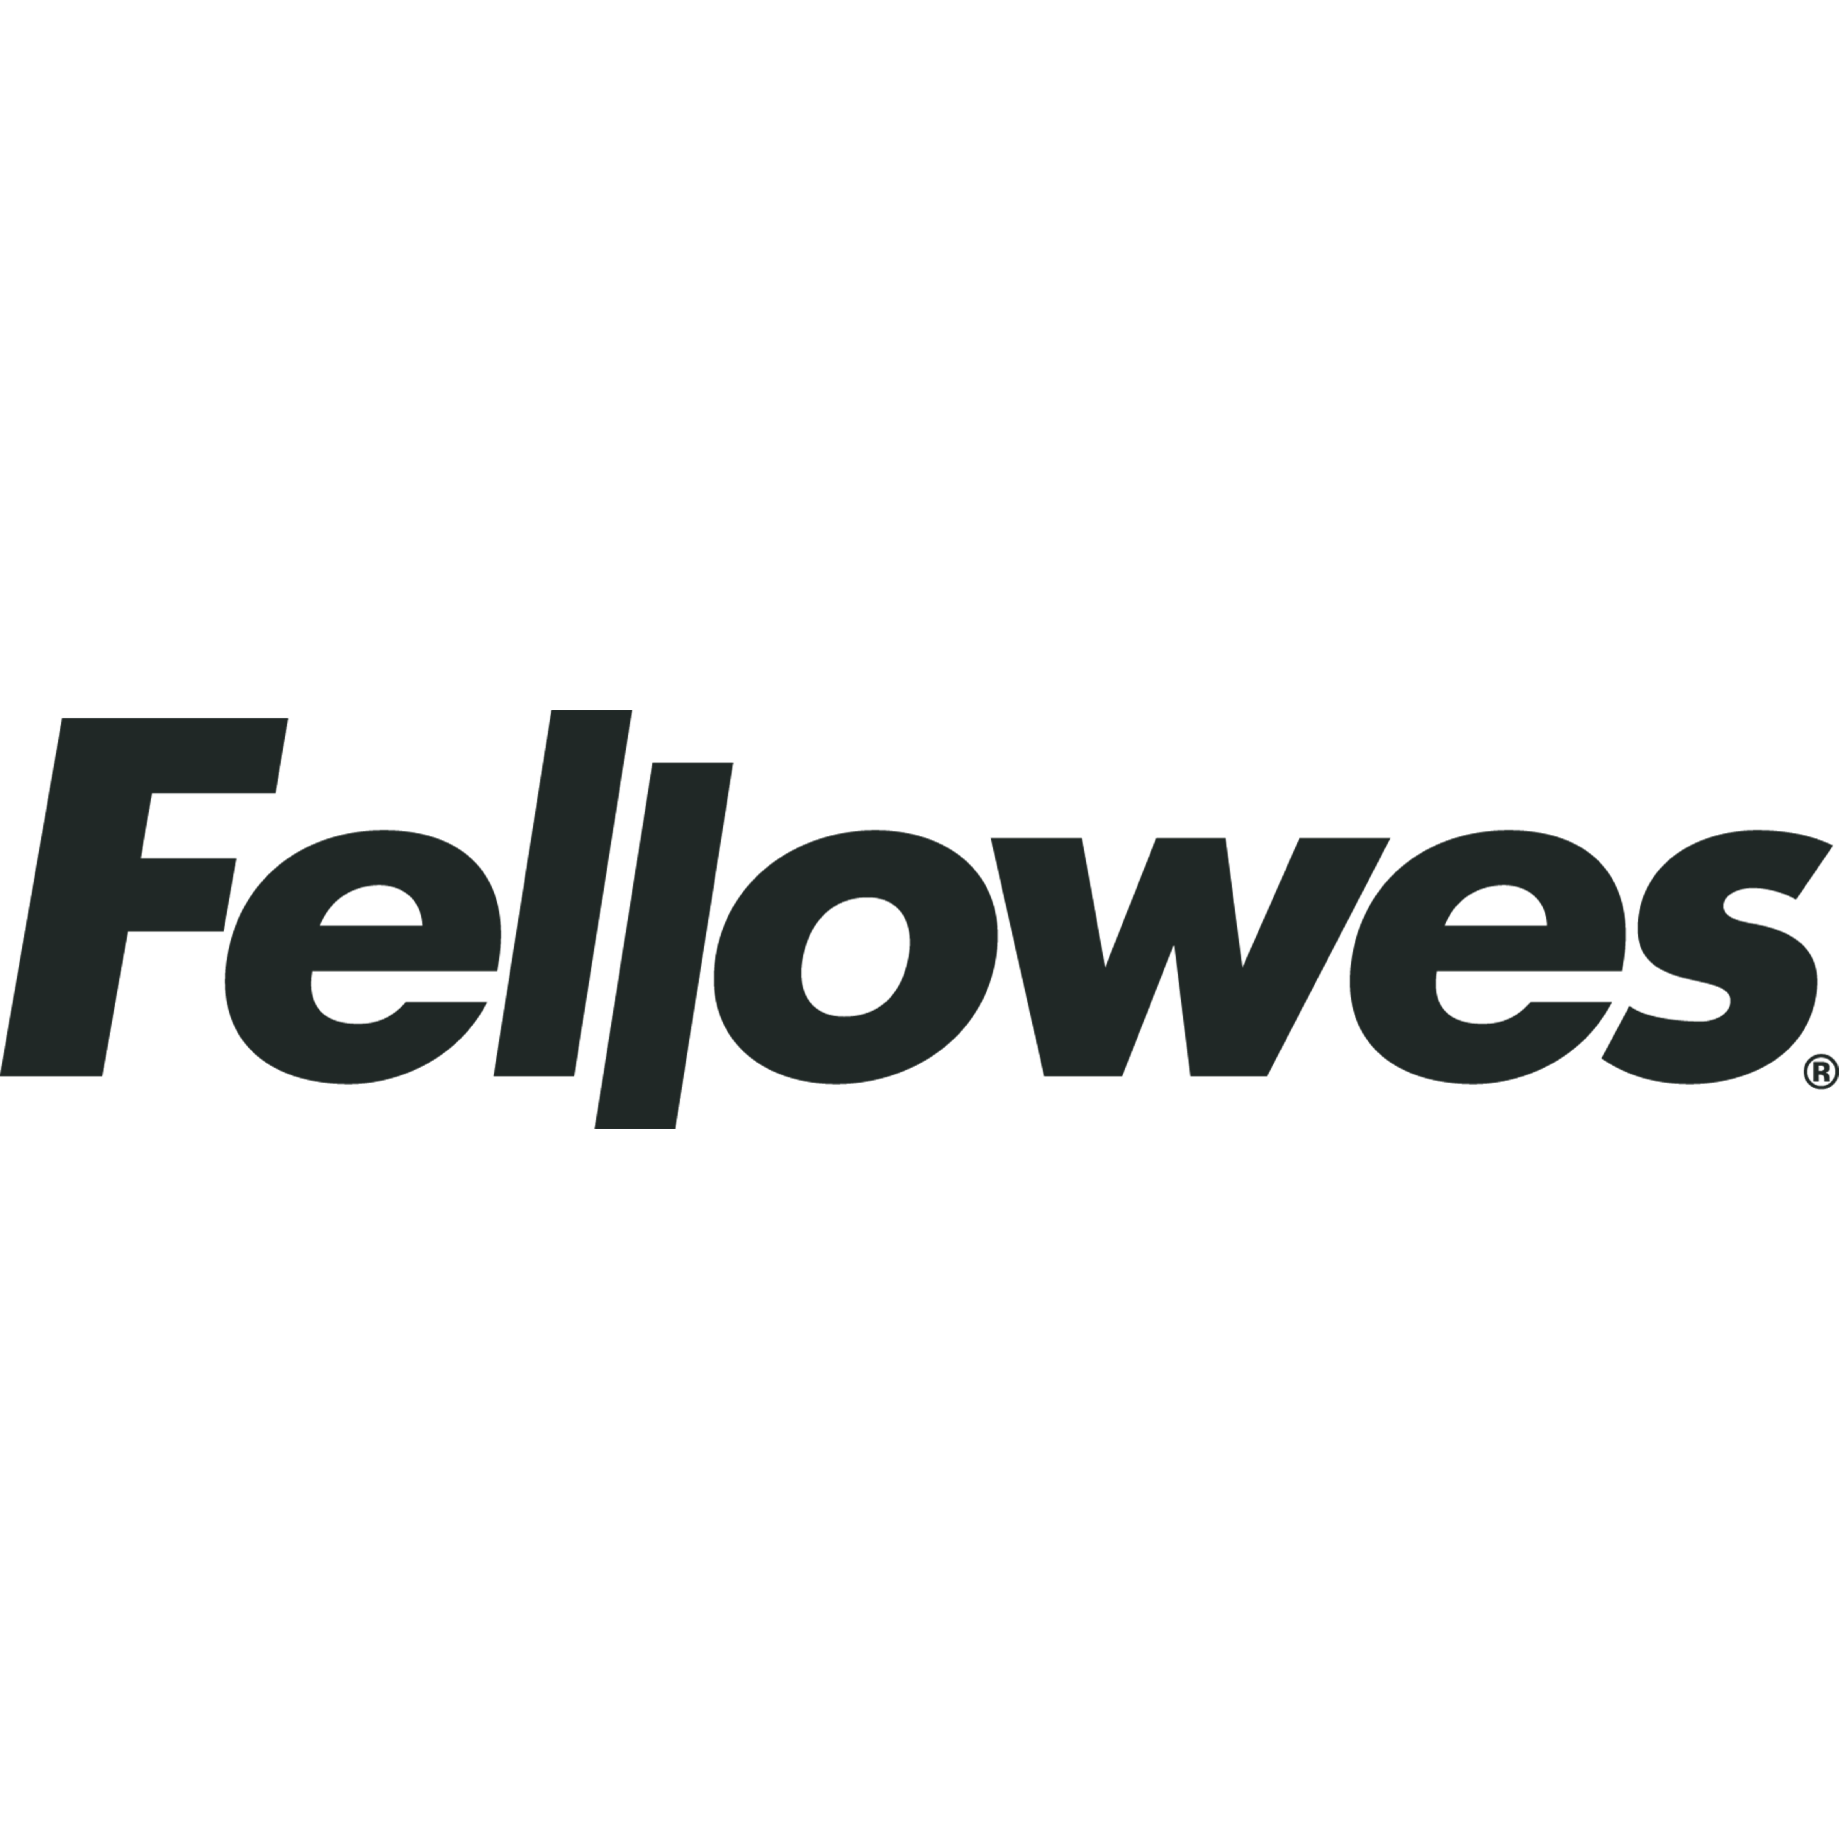 Fellowes®